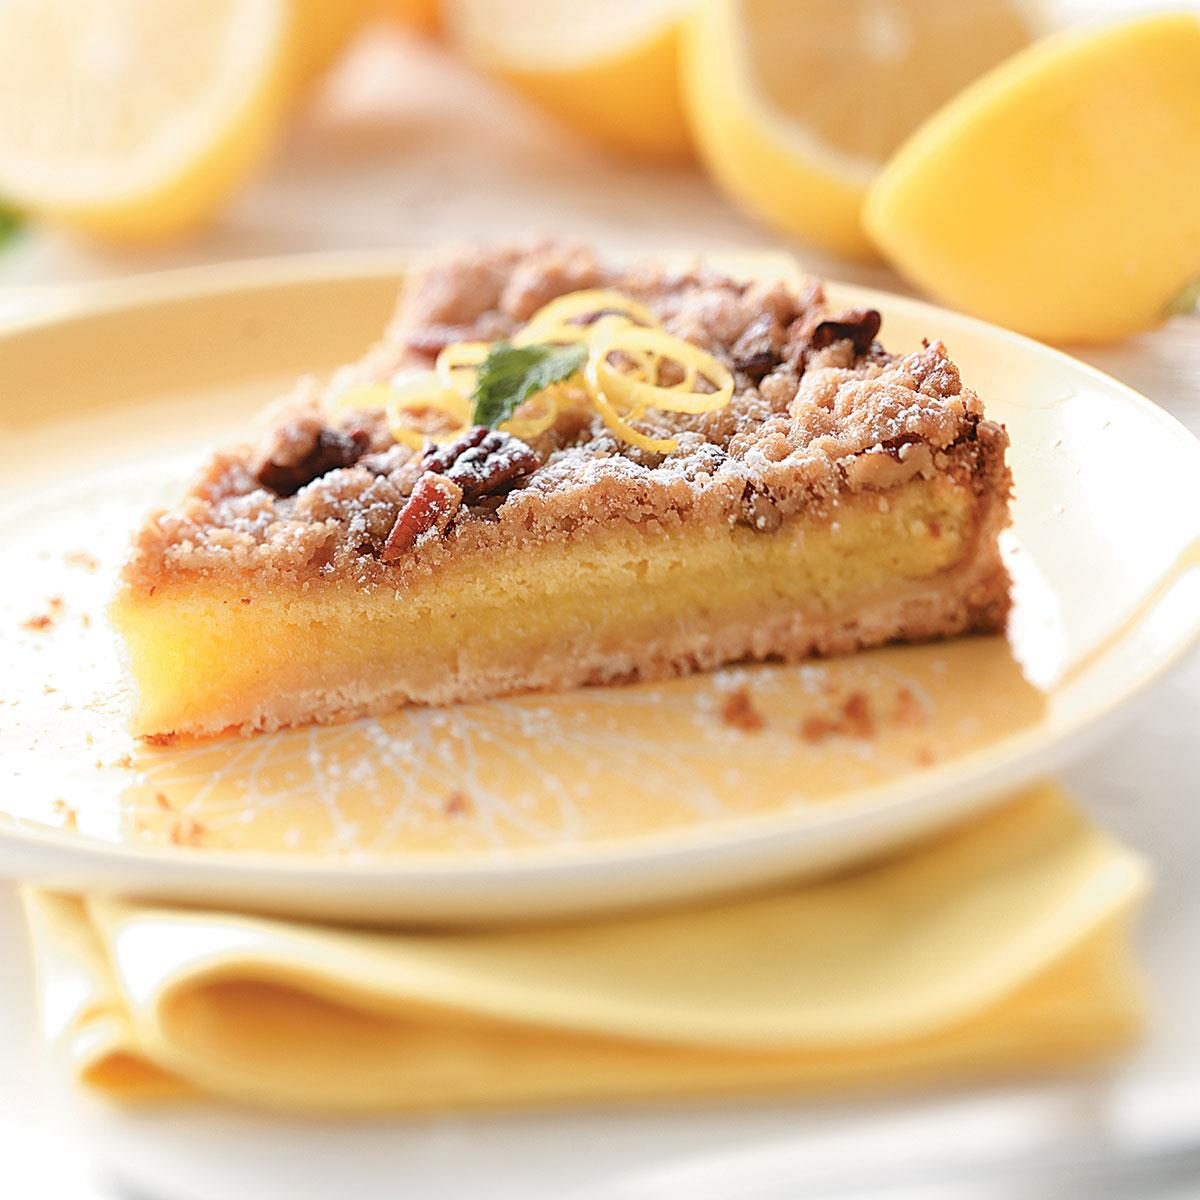 Streusel-Topped Lemon Tart Recipe: How to Make It